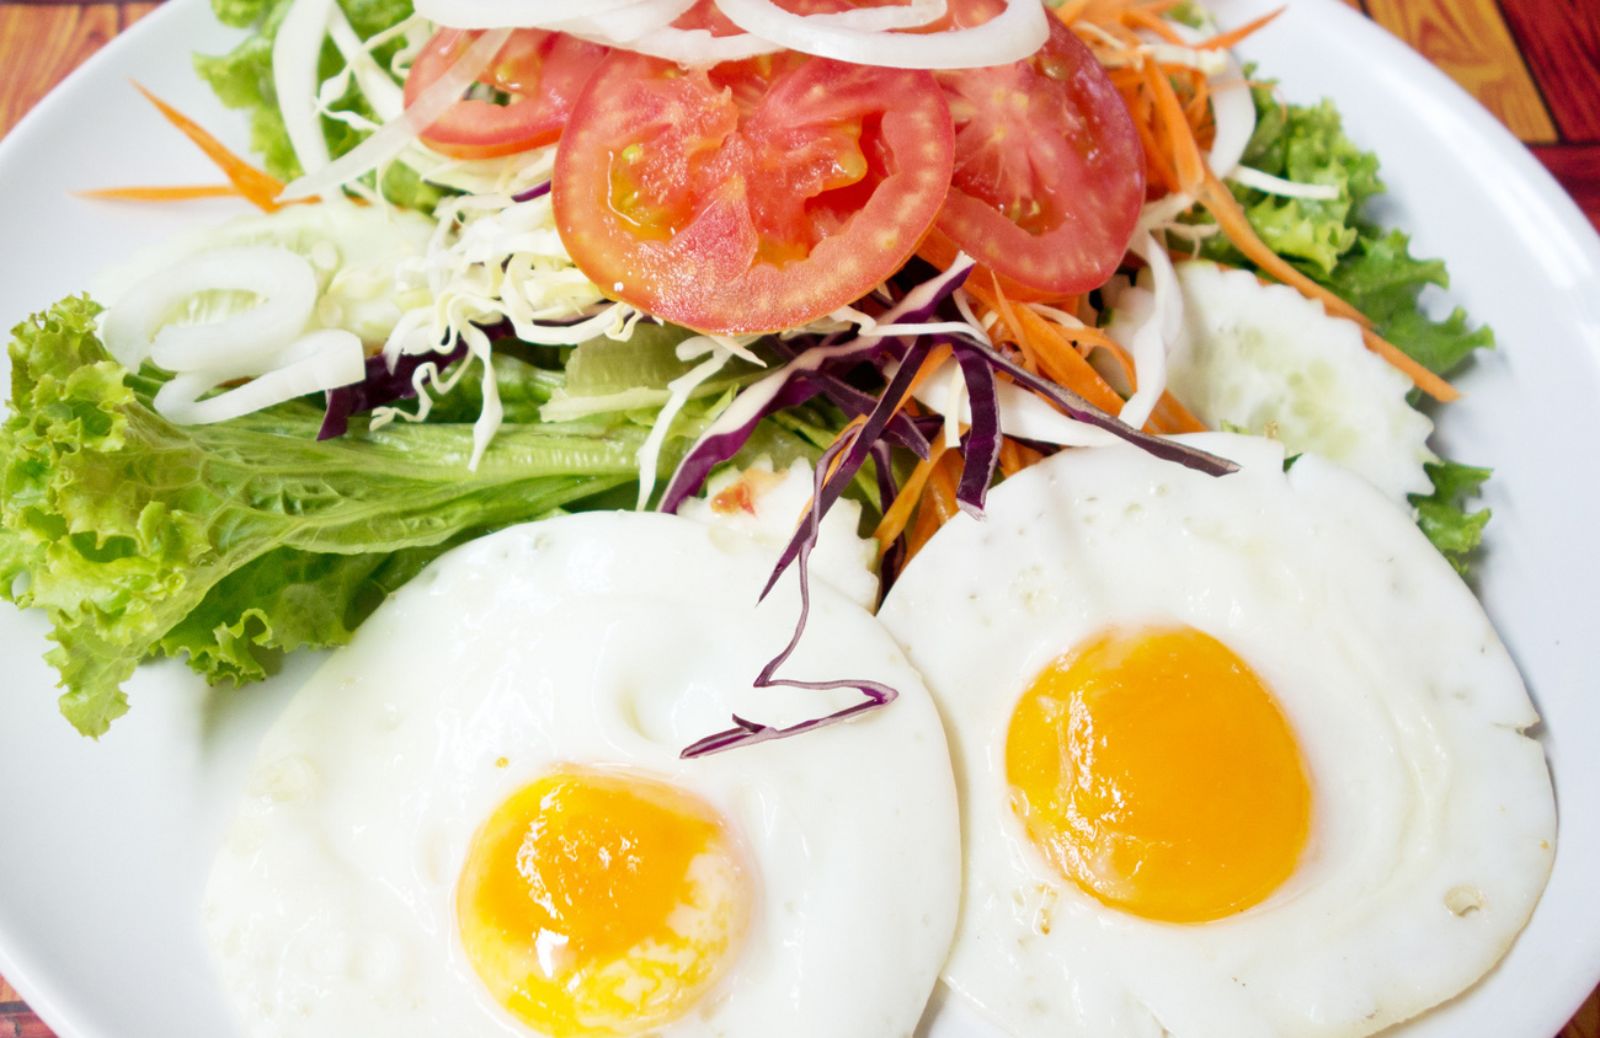 Uova e verdure crude, ecco la ricetta per un'alimentazione nutriente